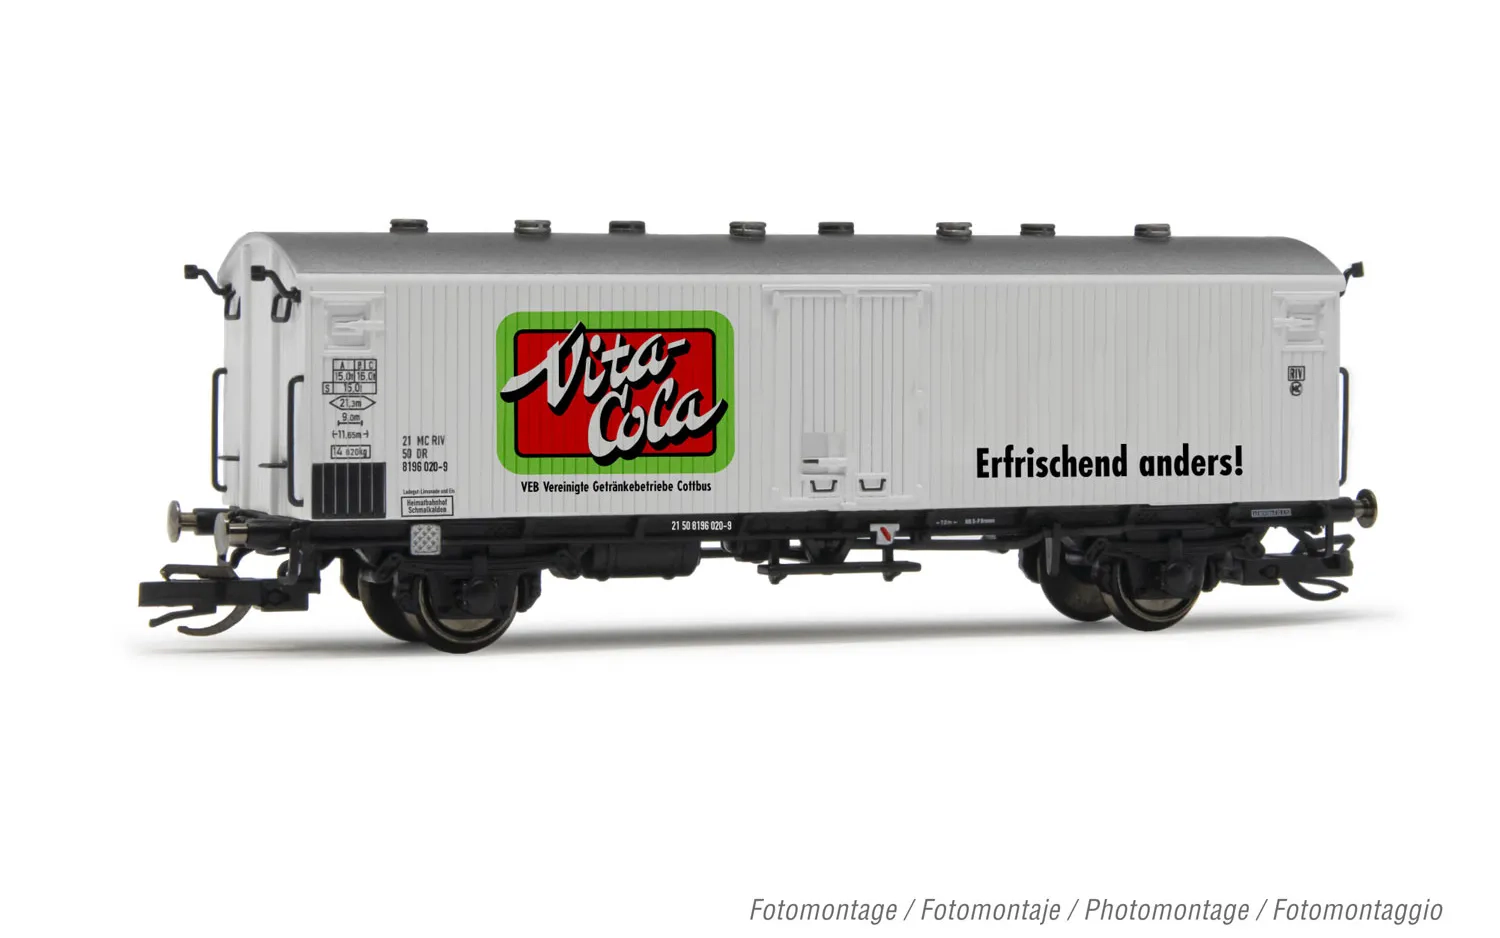 DR, vagón refrigerado de 2 ejes Tnbs ingles para transporte por ferry boat, decoración «Vita-Cola», ép. IV